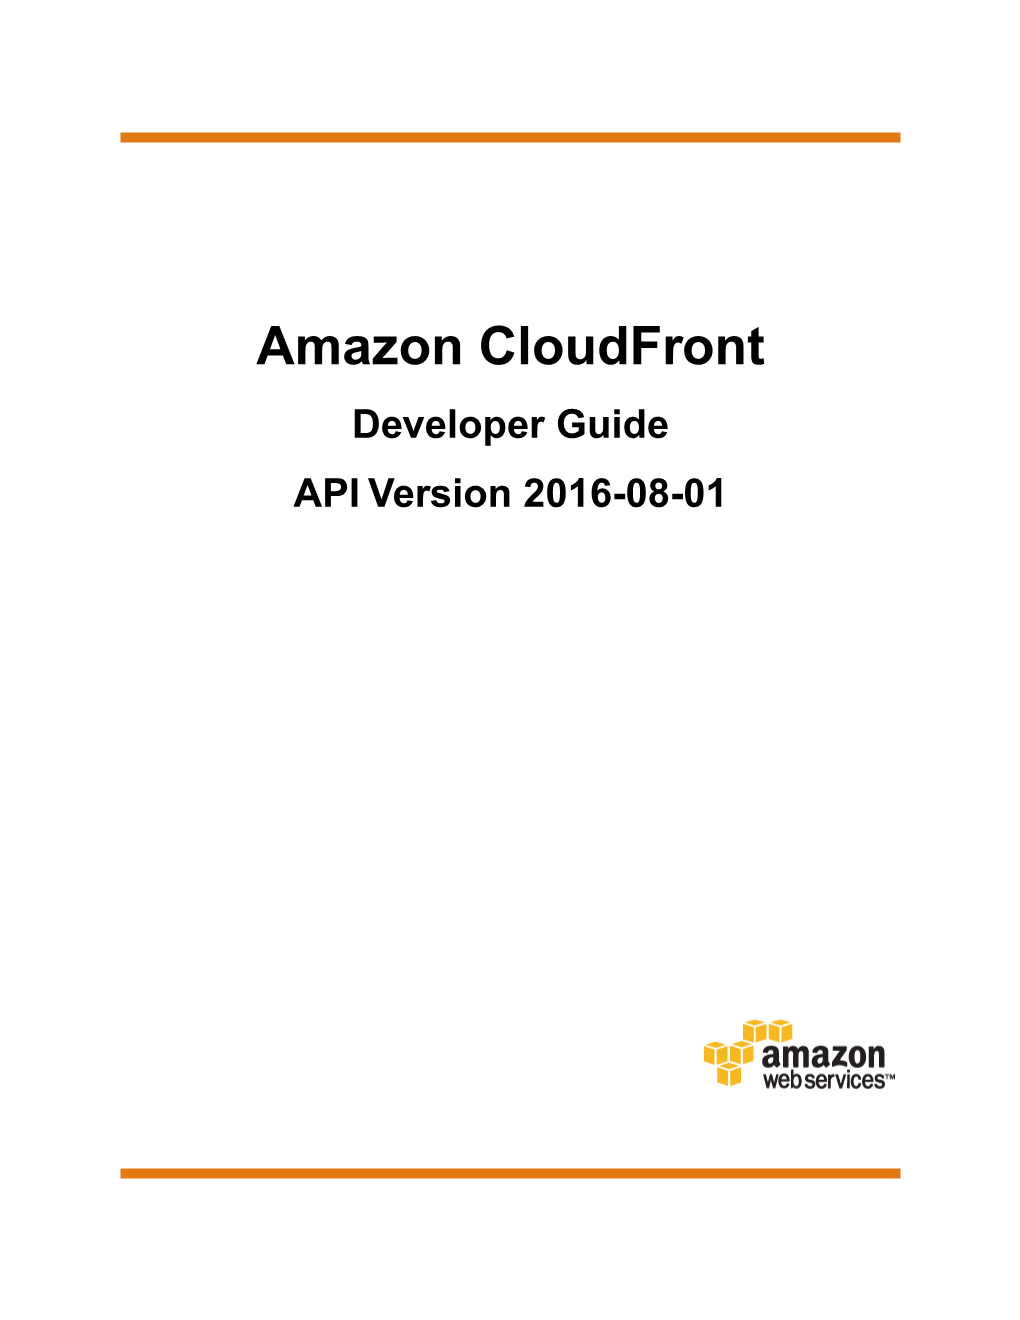 Amazon Cloudfront Developer Guide API Version 2016-08-01 Amazon Cloudfront Developer Guide